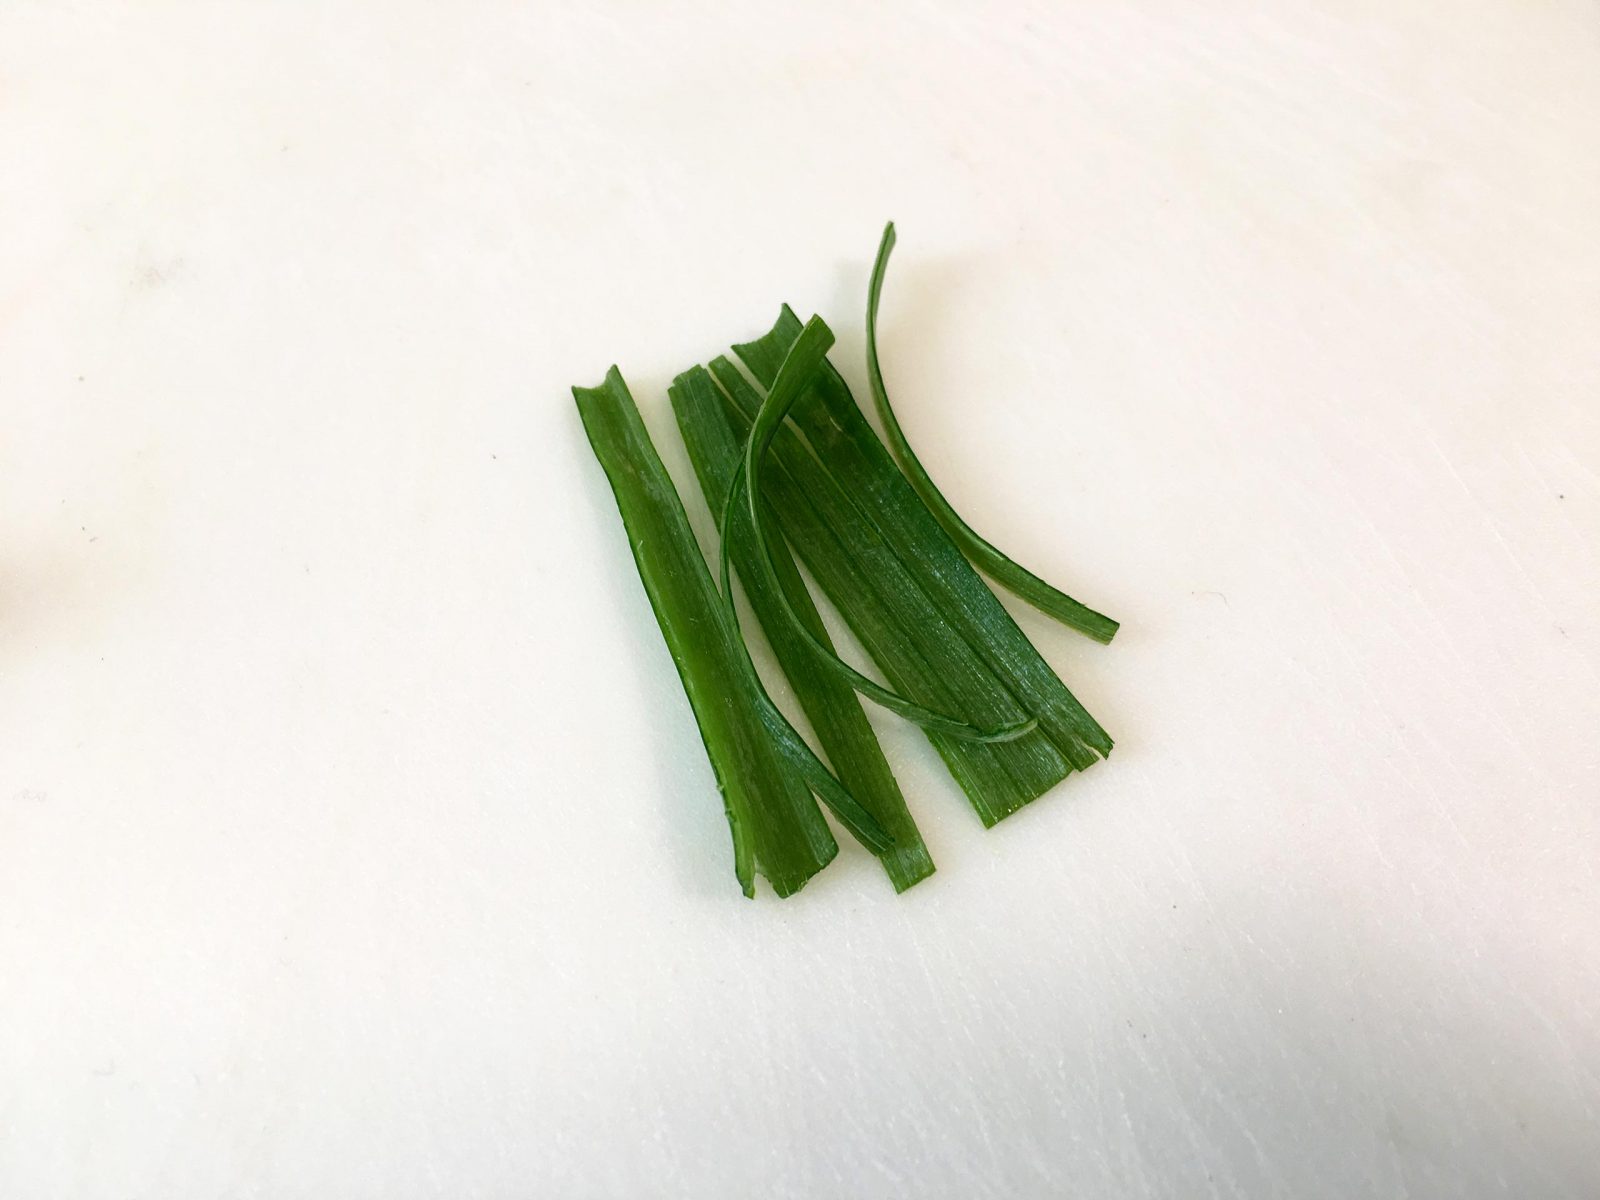 רצועות-בצל-ירוק-לסלט ירקות שורש אסייתי